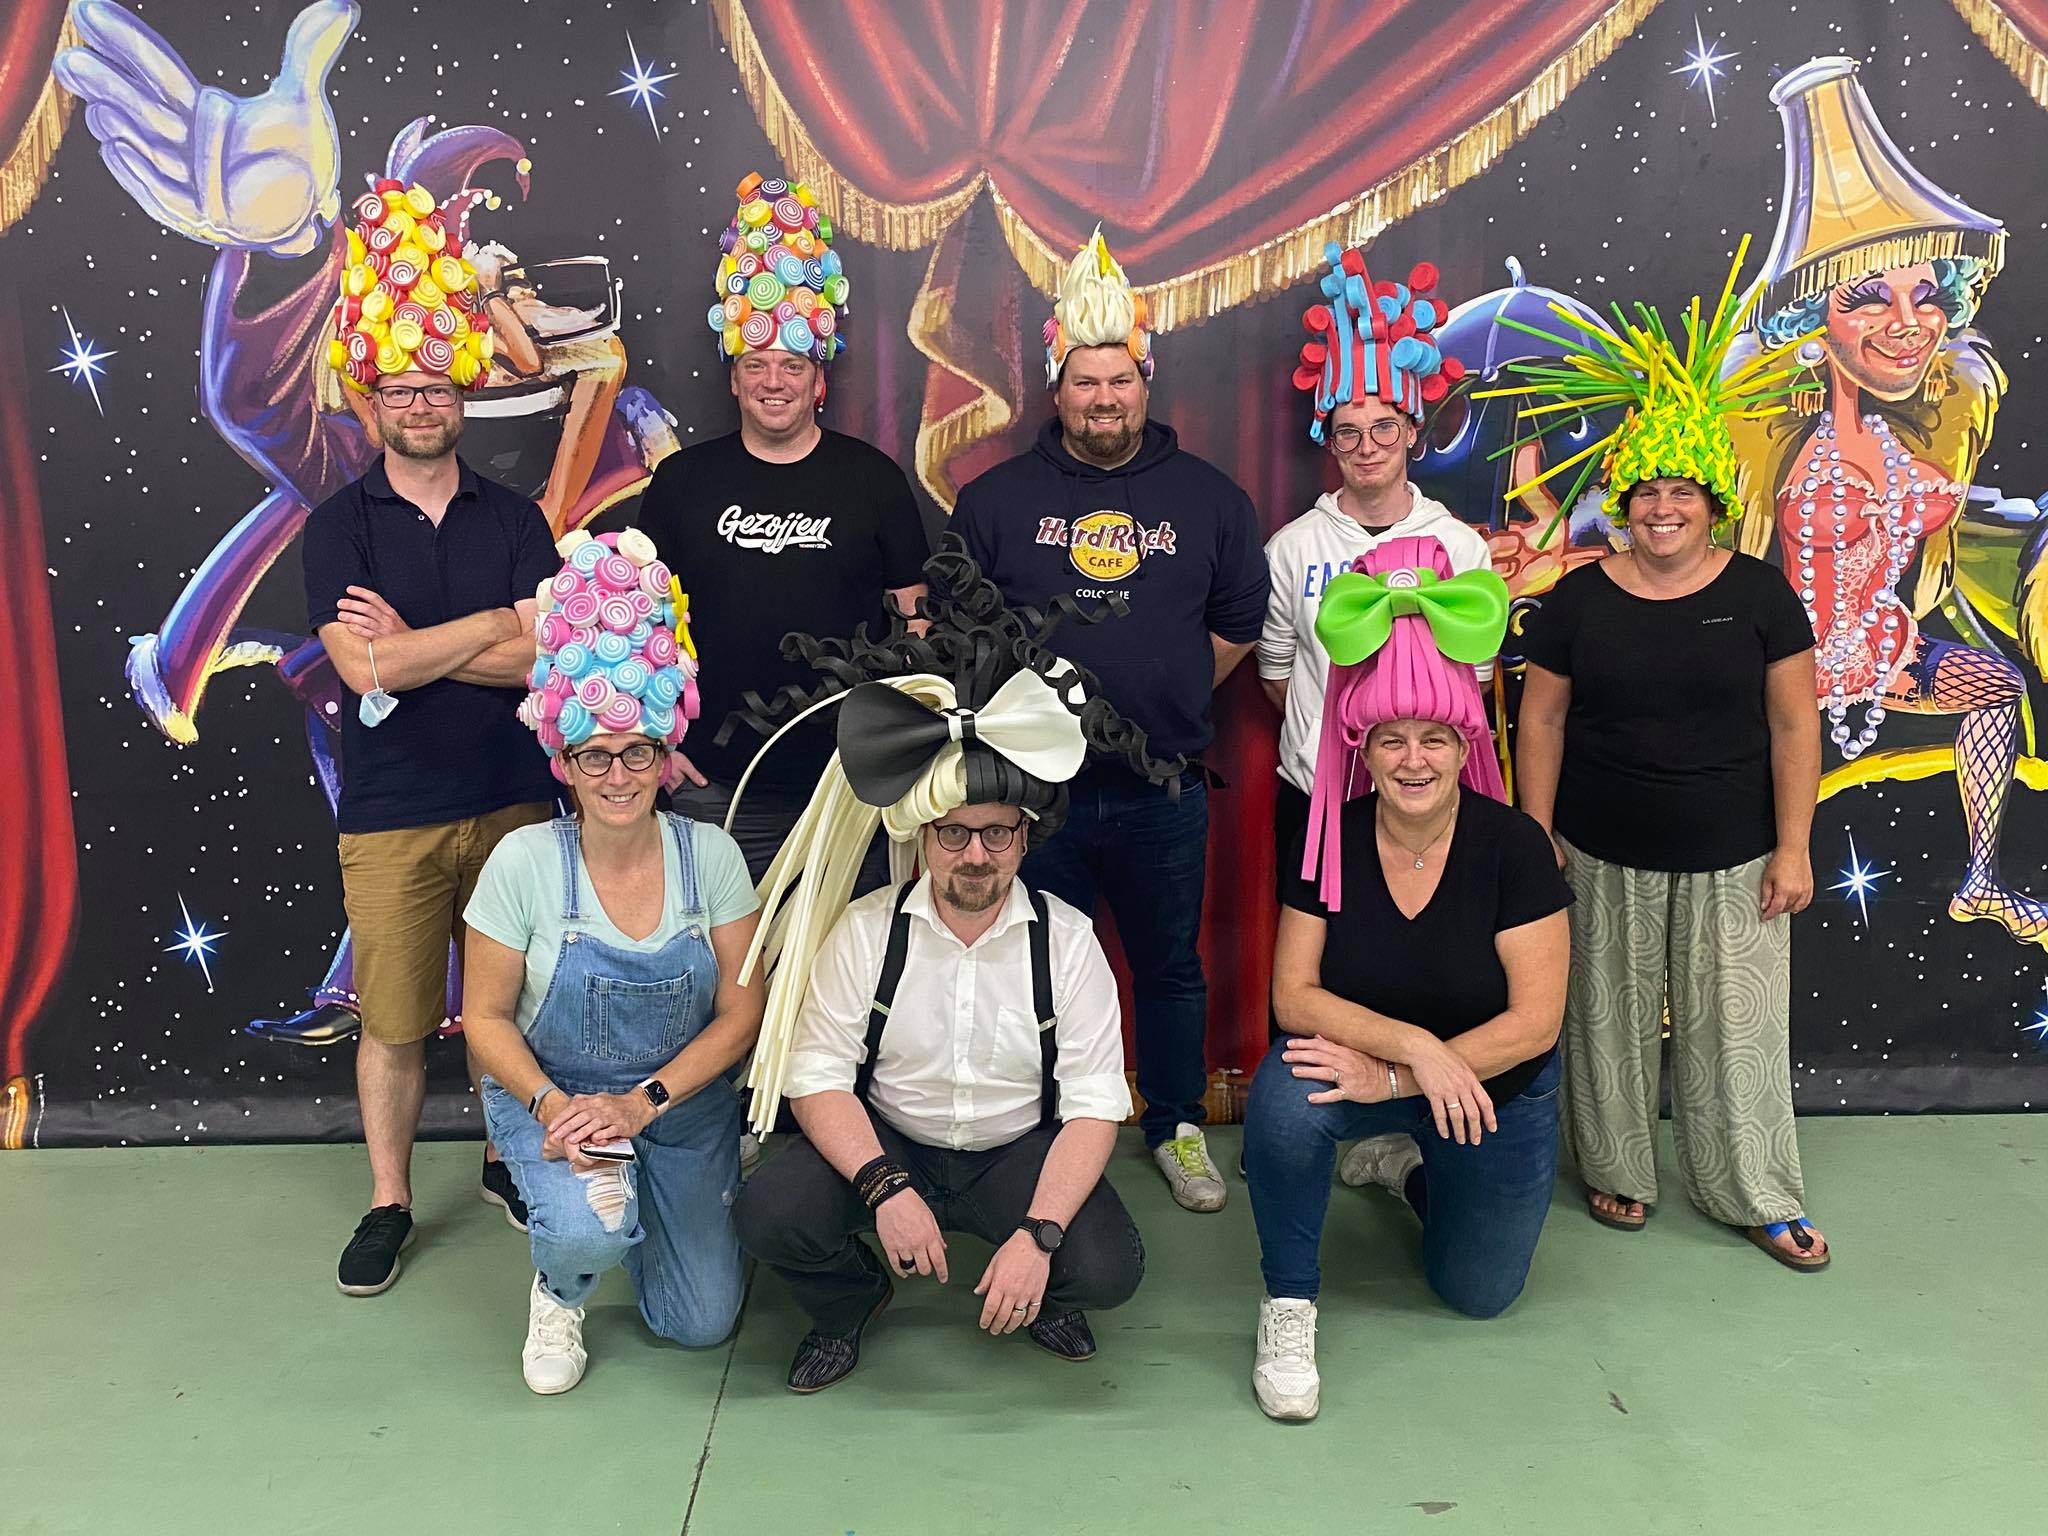 Carnaval Aalst foto- en videoblog: Aalst Carnaval - Academie voor Carnavalskunsten liet carnavalisten met Foam'!